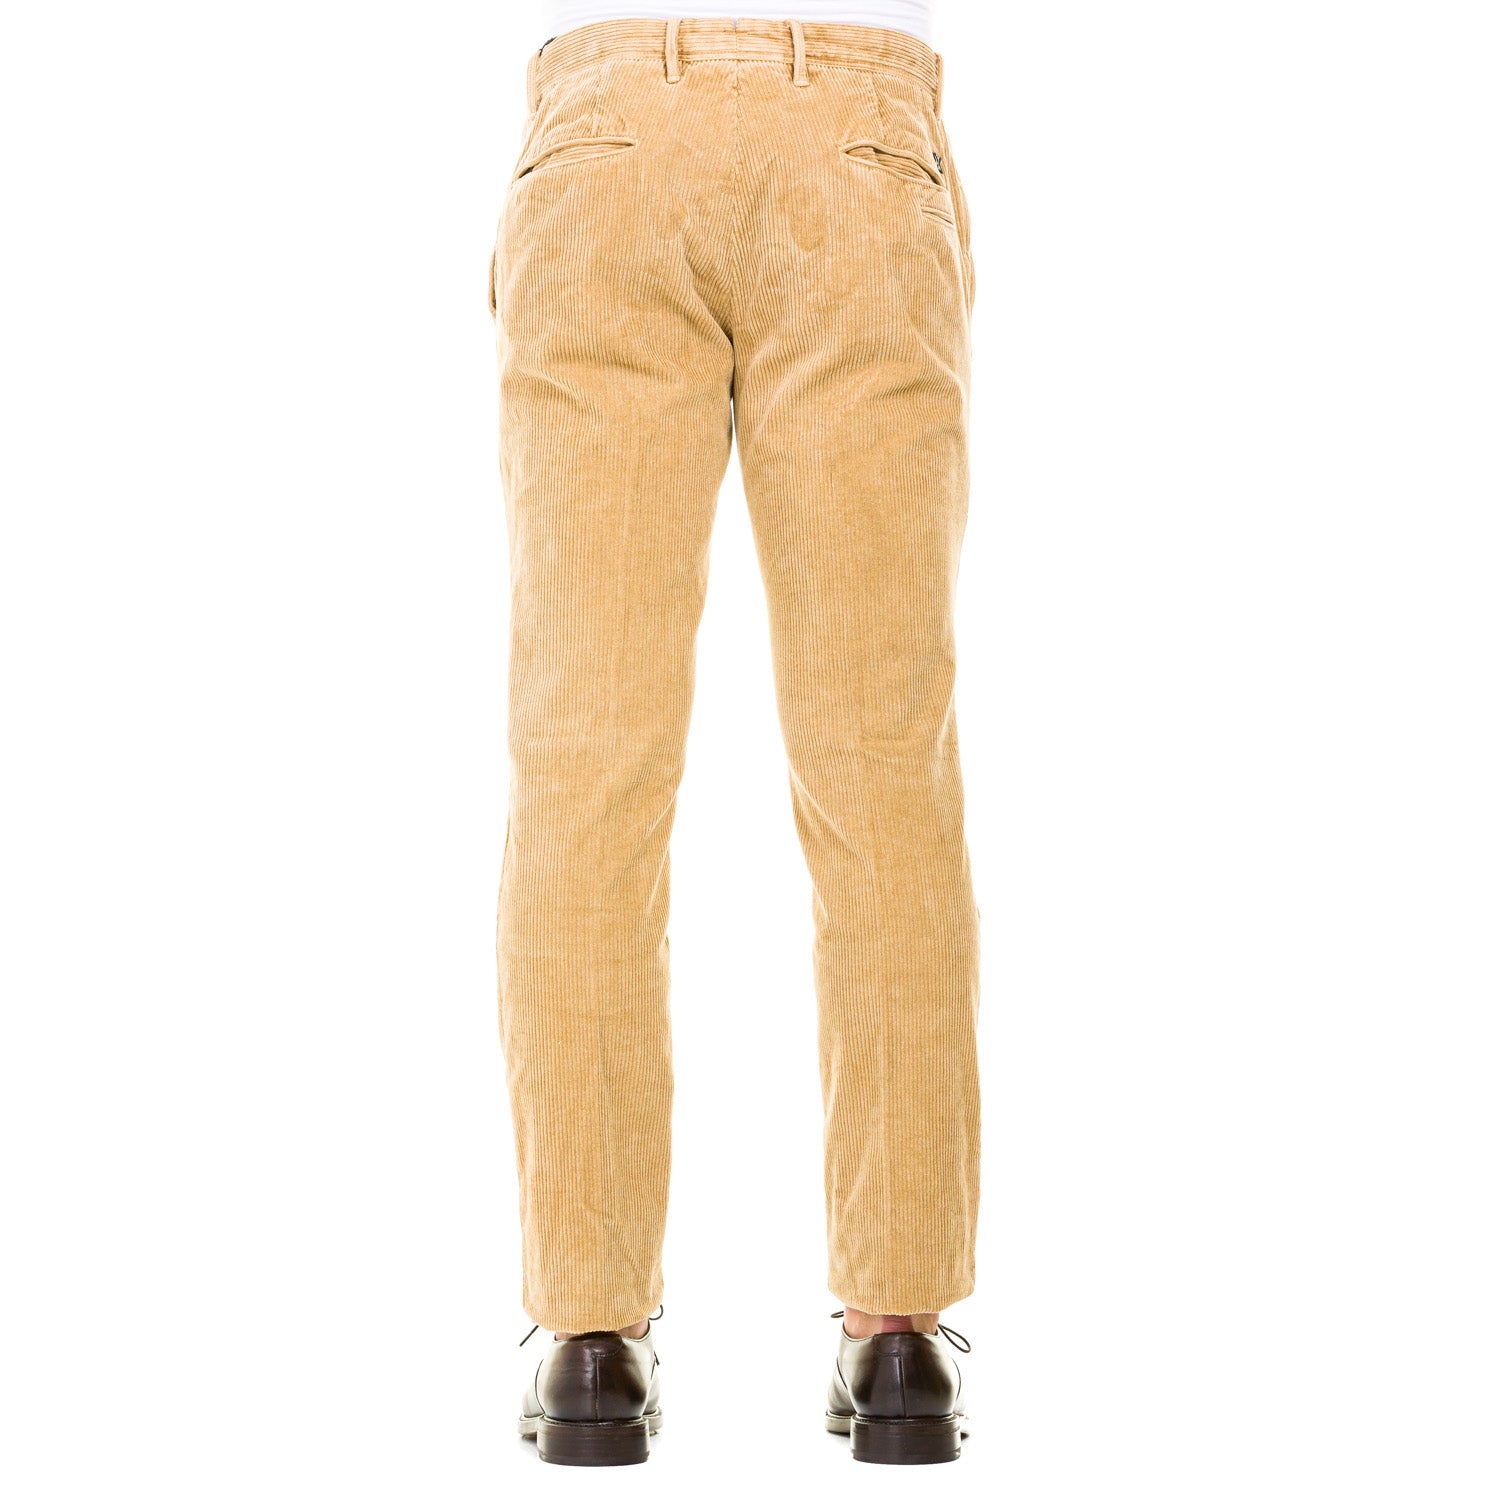 Pantalone INCOTEX 521 13S103-40675 Beige - Avant-gardeandria